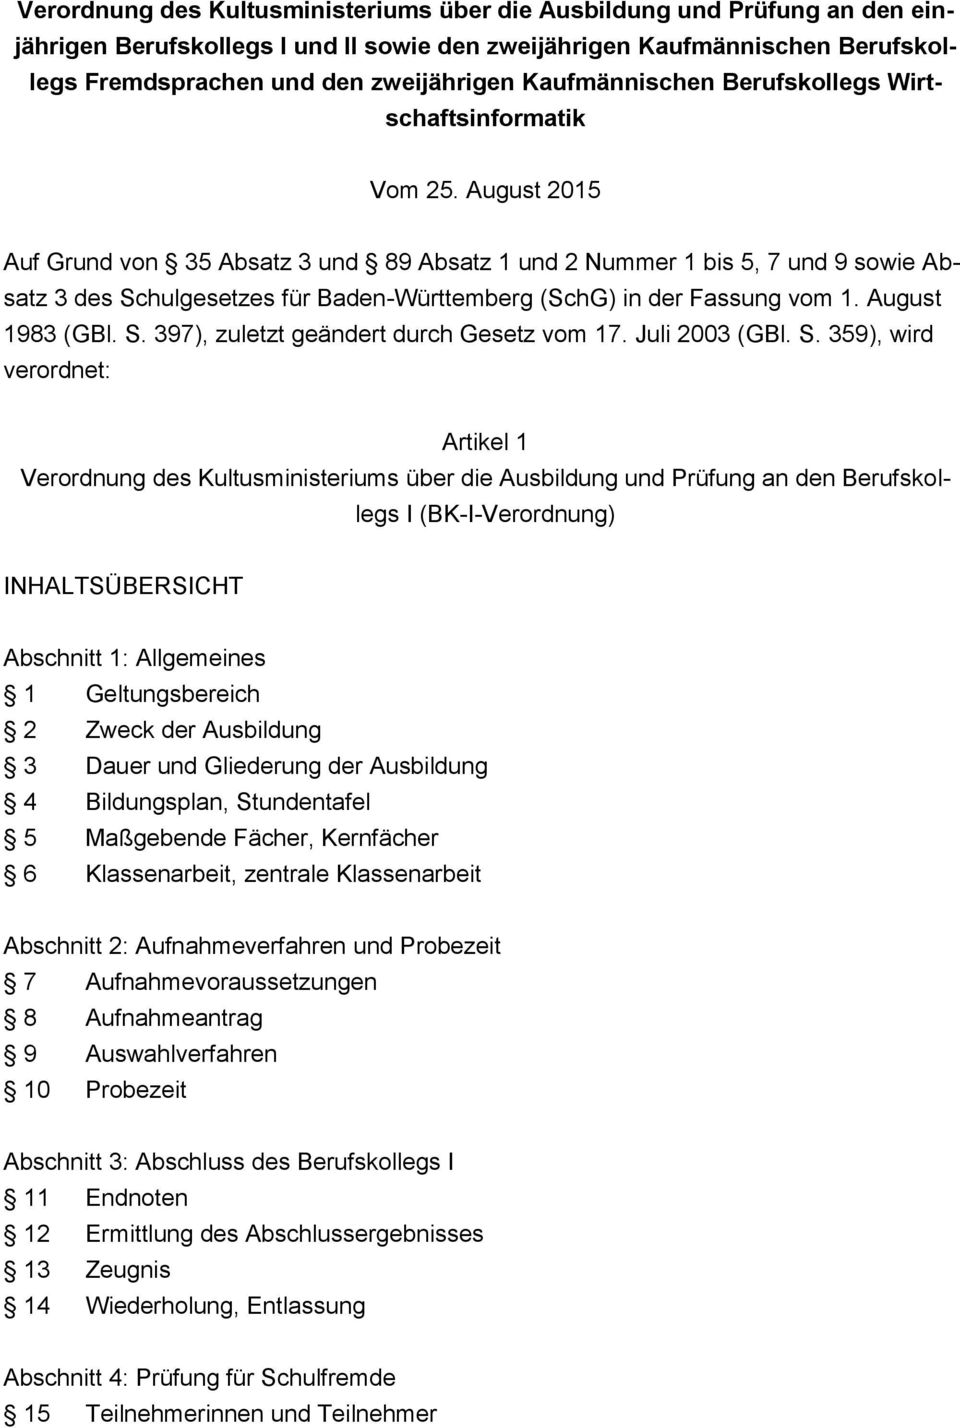 August 2015 Auf Grund von 35 Absatz 3 und 89 Absatz 1 und 2 Nummer 1 bis 5, 7 und 9 sowie Absatz 3 des Schulgesetzes für Baden-Württemberg (SchG) in der Fassung vom 1. August 1983 (GBl. S. 397), zuletzt geändert durch Gesetz vom 17.